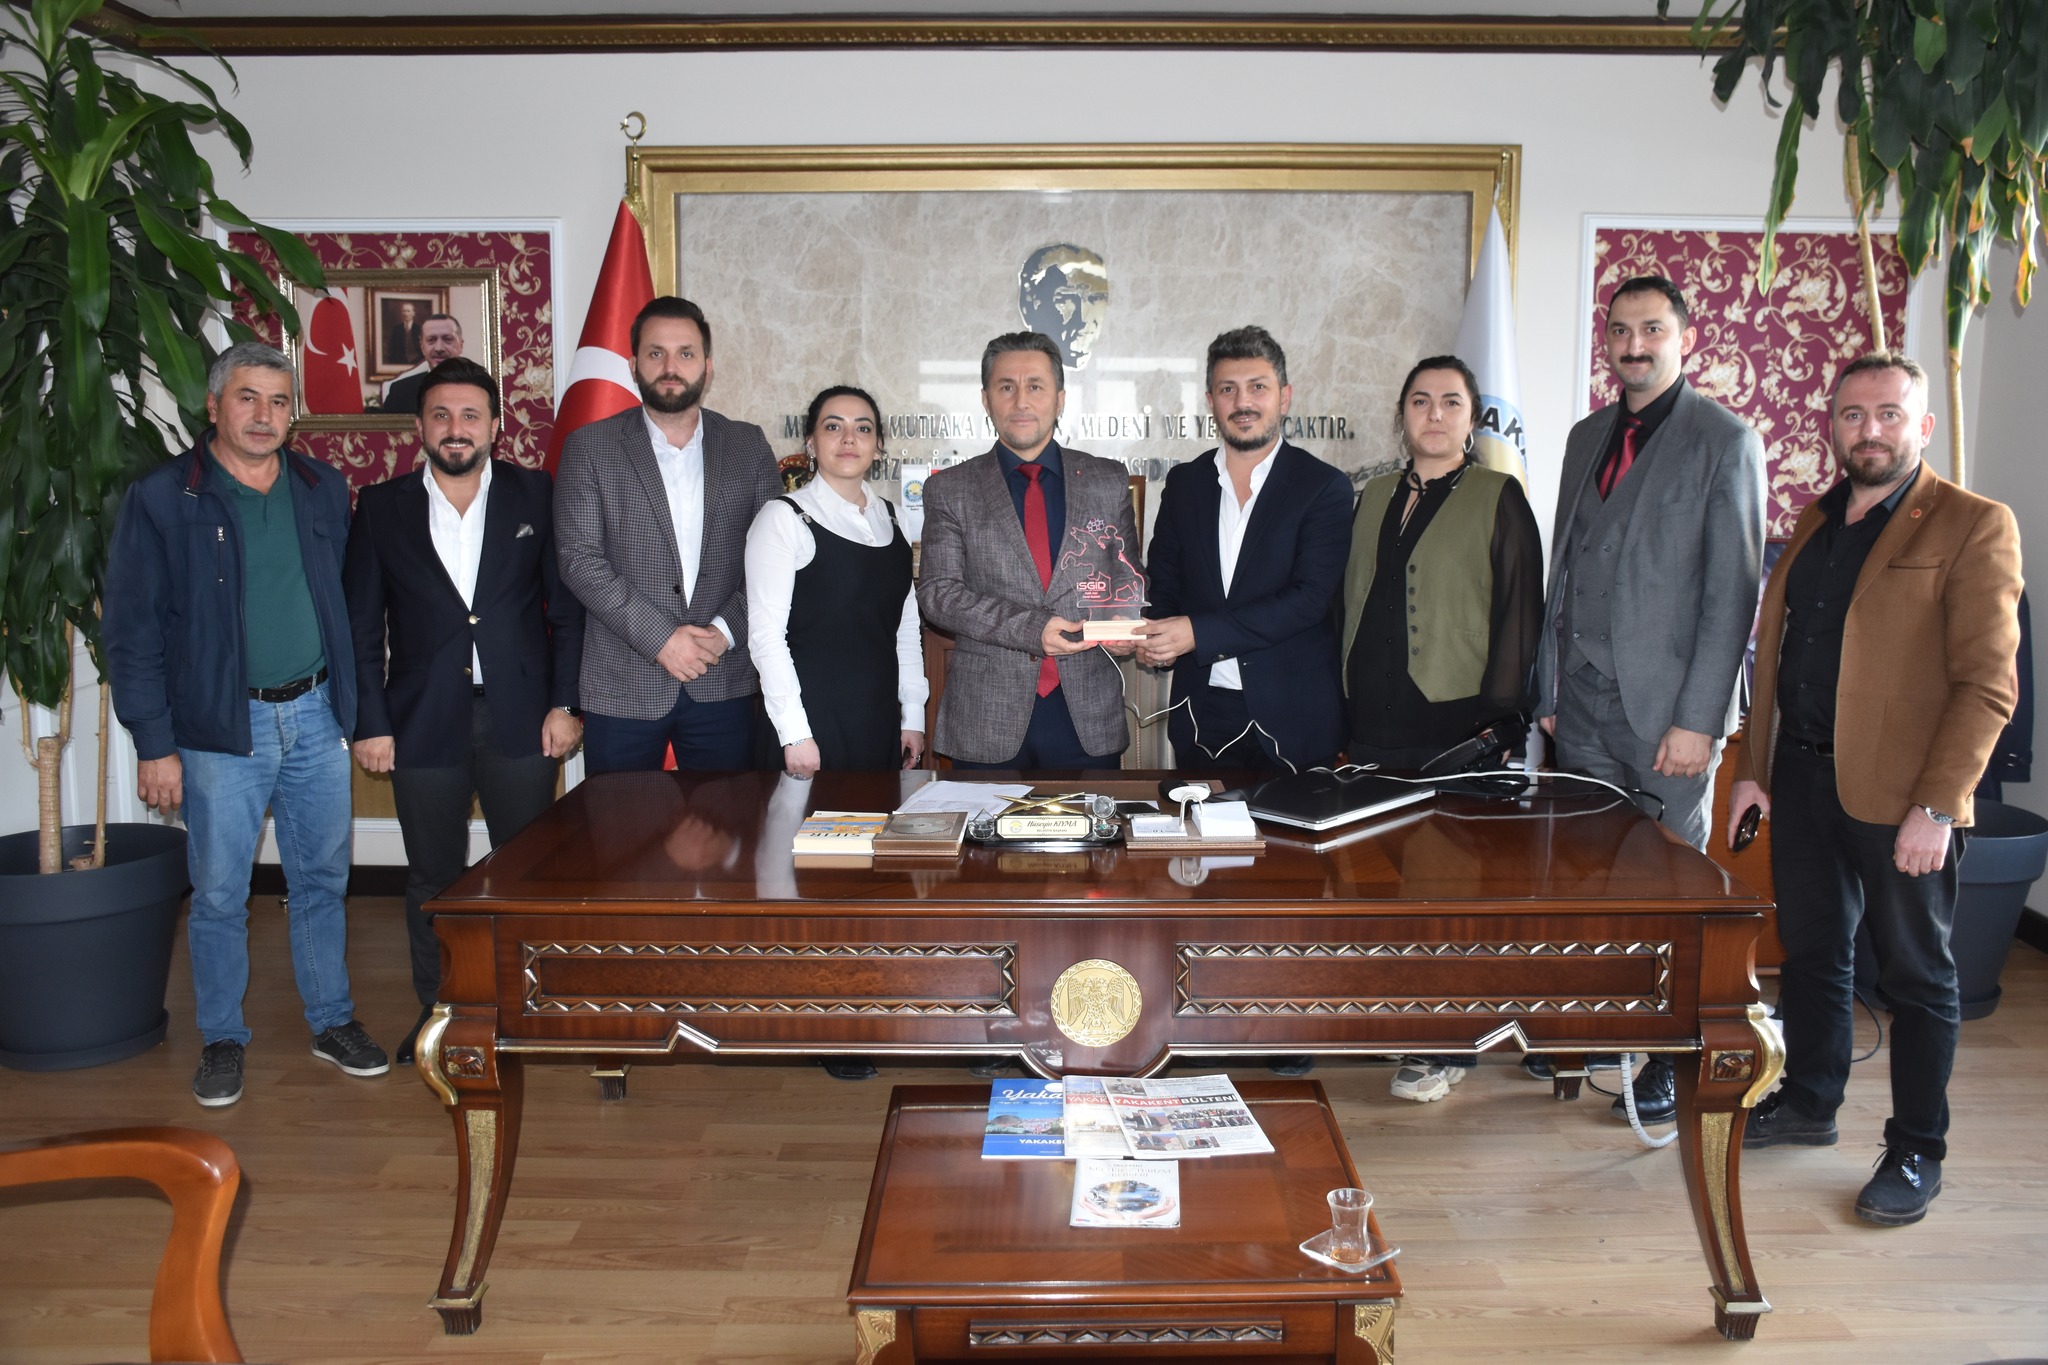 İstanbul Samsunlu Genç İş İnsanları Derneği (İSGİD) Genel Başkanı Fatih Aşçı ve Yönetim Kurulu üyeleri, Belediye Başkanımız Hüseyin Kıyma’yı makamında ziyaret ettiler.